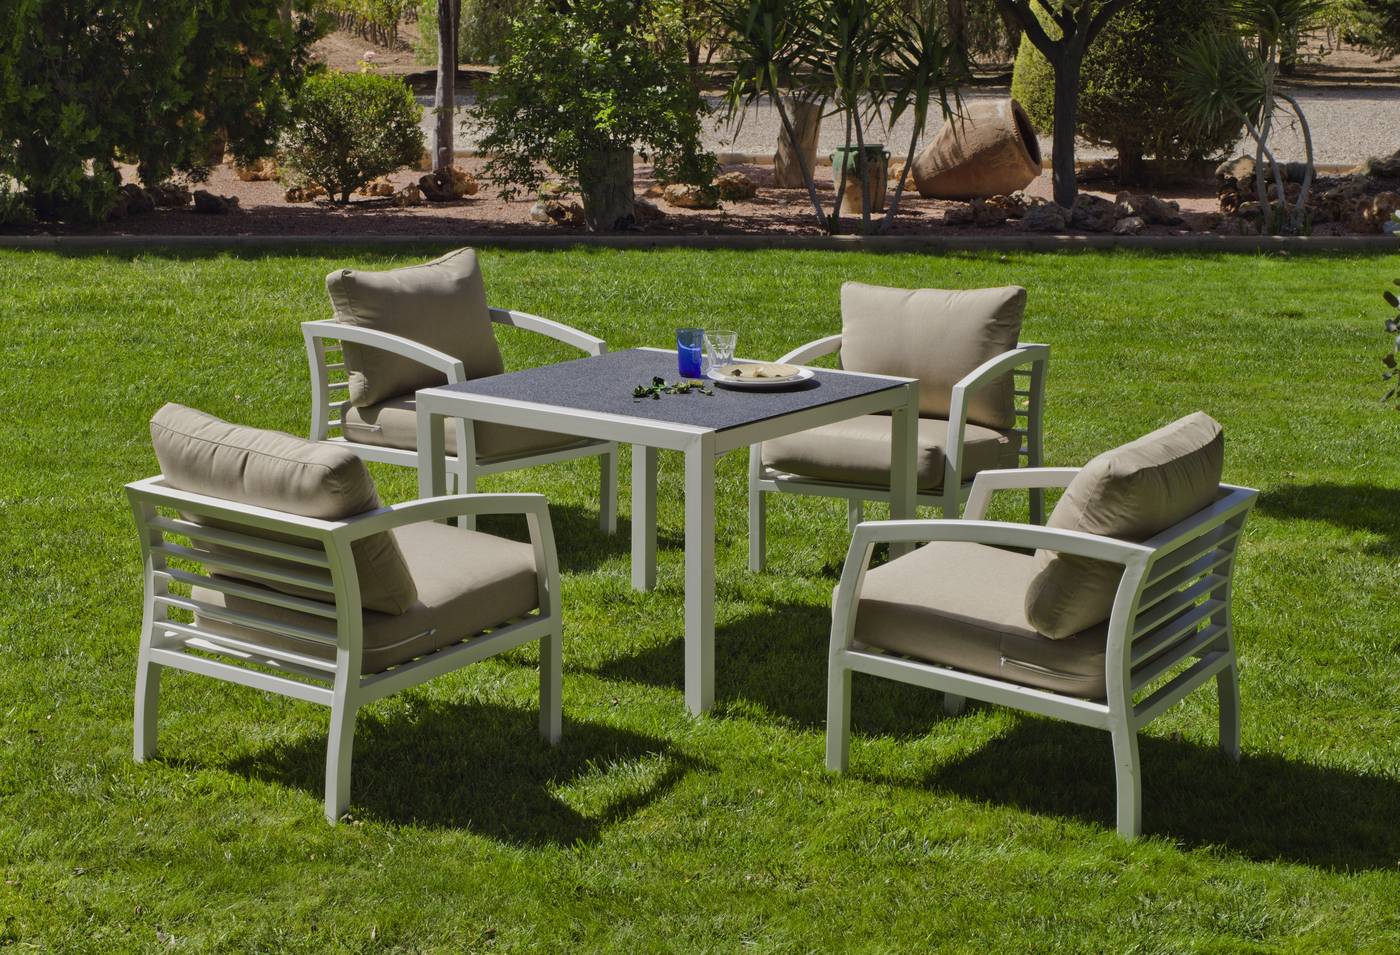 Conjunto jardín de aluminio color blanco: mesa de comedor cuadrada + 4 sillones con cojines